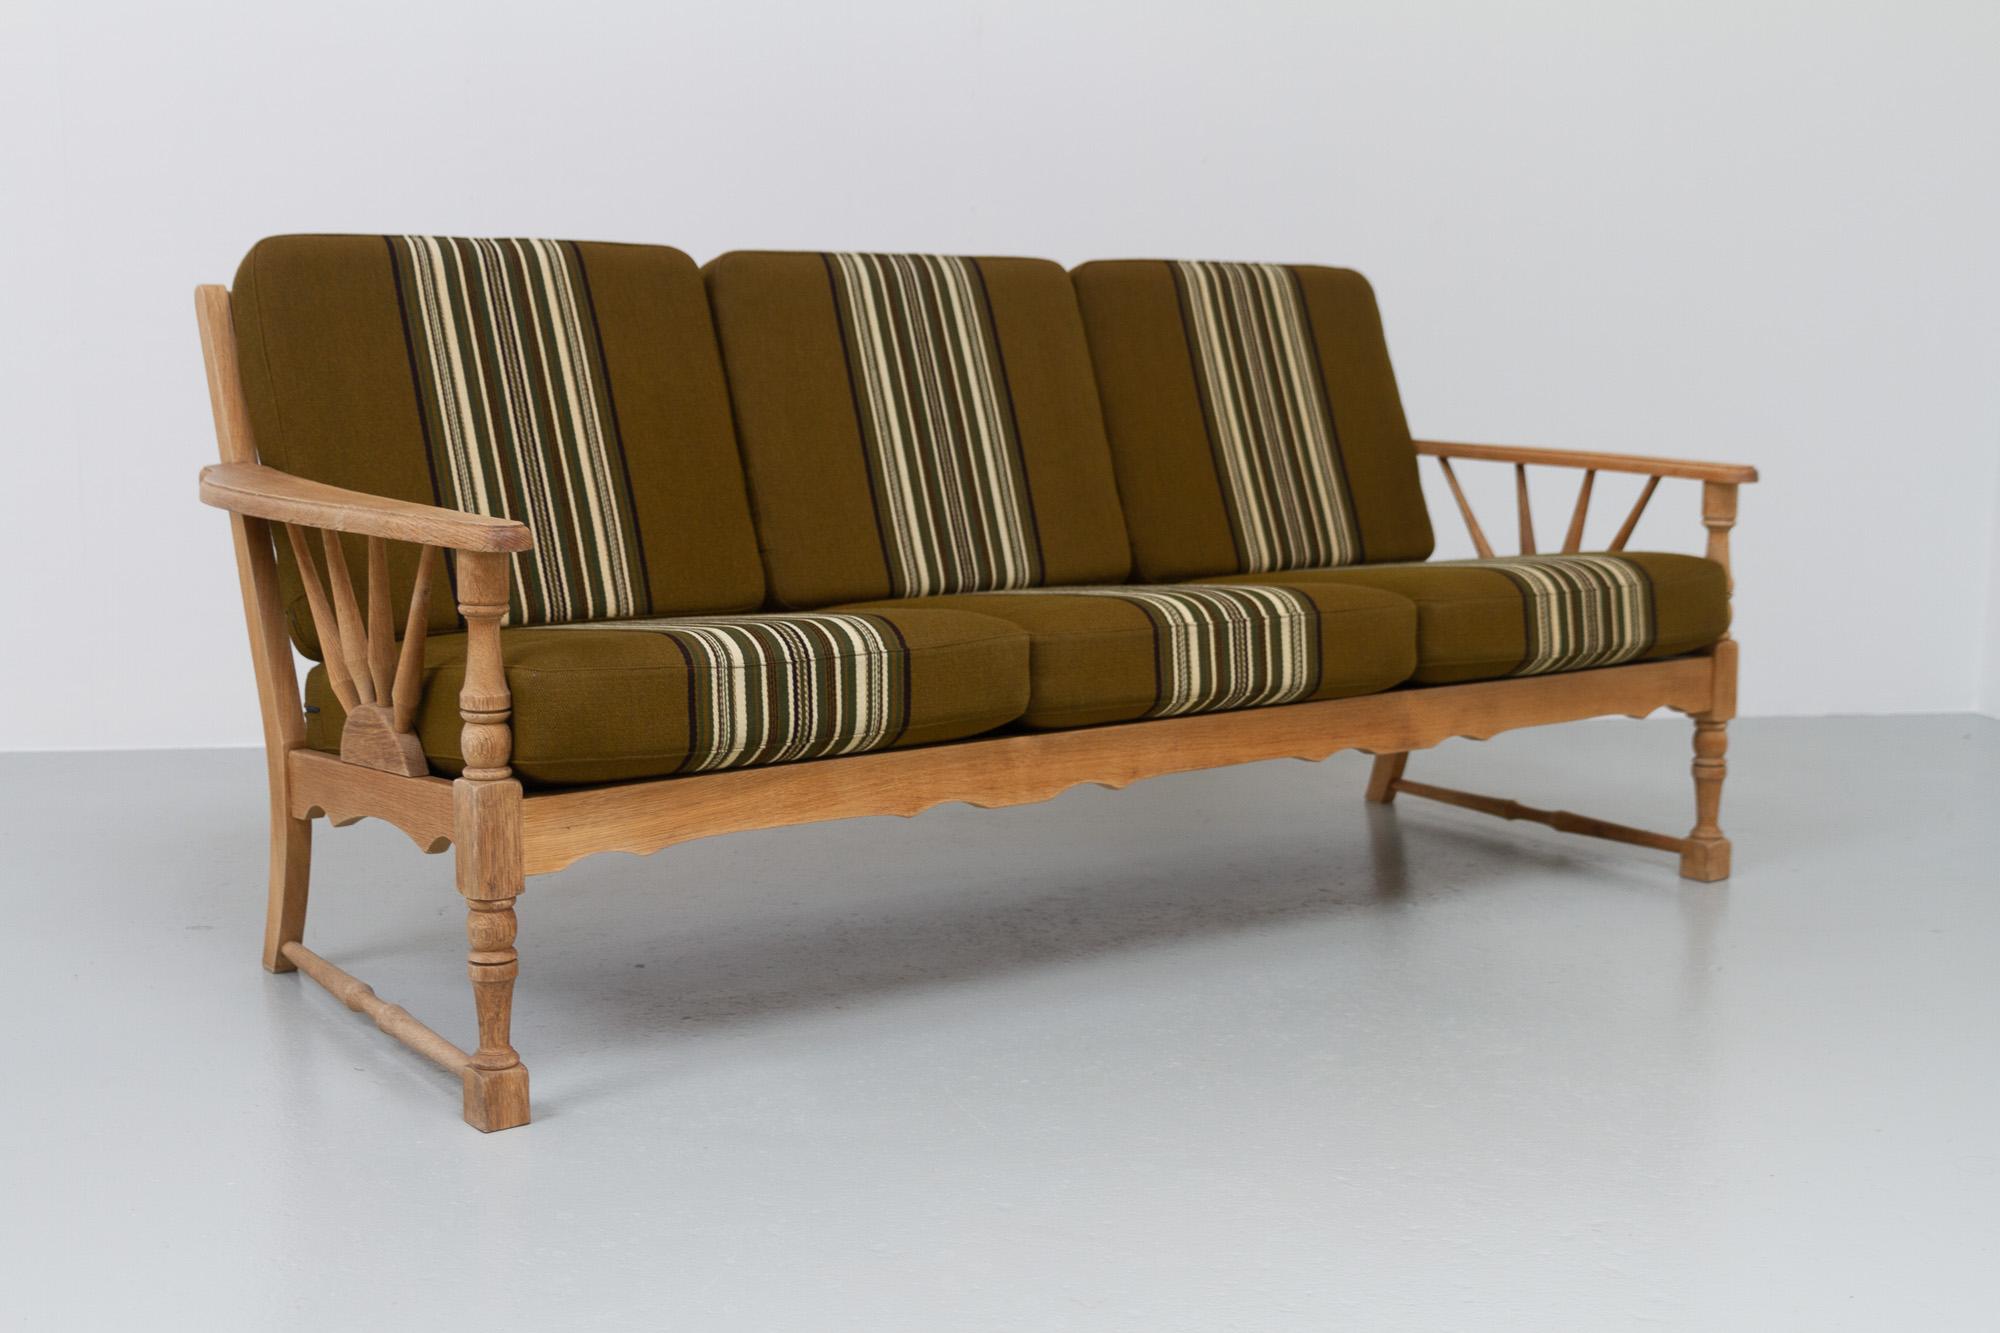 Vintage Danish Sofa in Eiche, 1960er Jahre.
Dänische Mid-Century Modern Couch aus massiver Eiche mit originalen Kissen aus Wollstoff.
Hergestellt in den 1960er Jahren von einem dänischen Möbelschreiner. Sehr wahrscheinlich von Henning Kjærnulf,